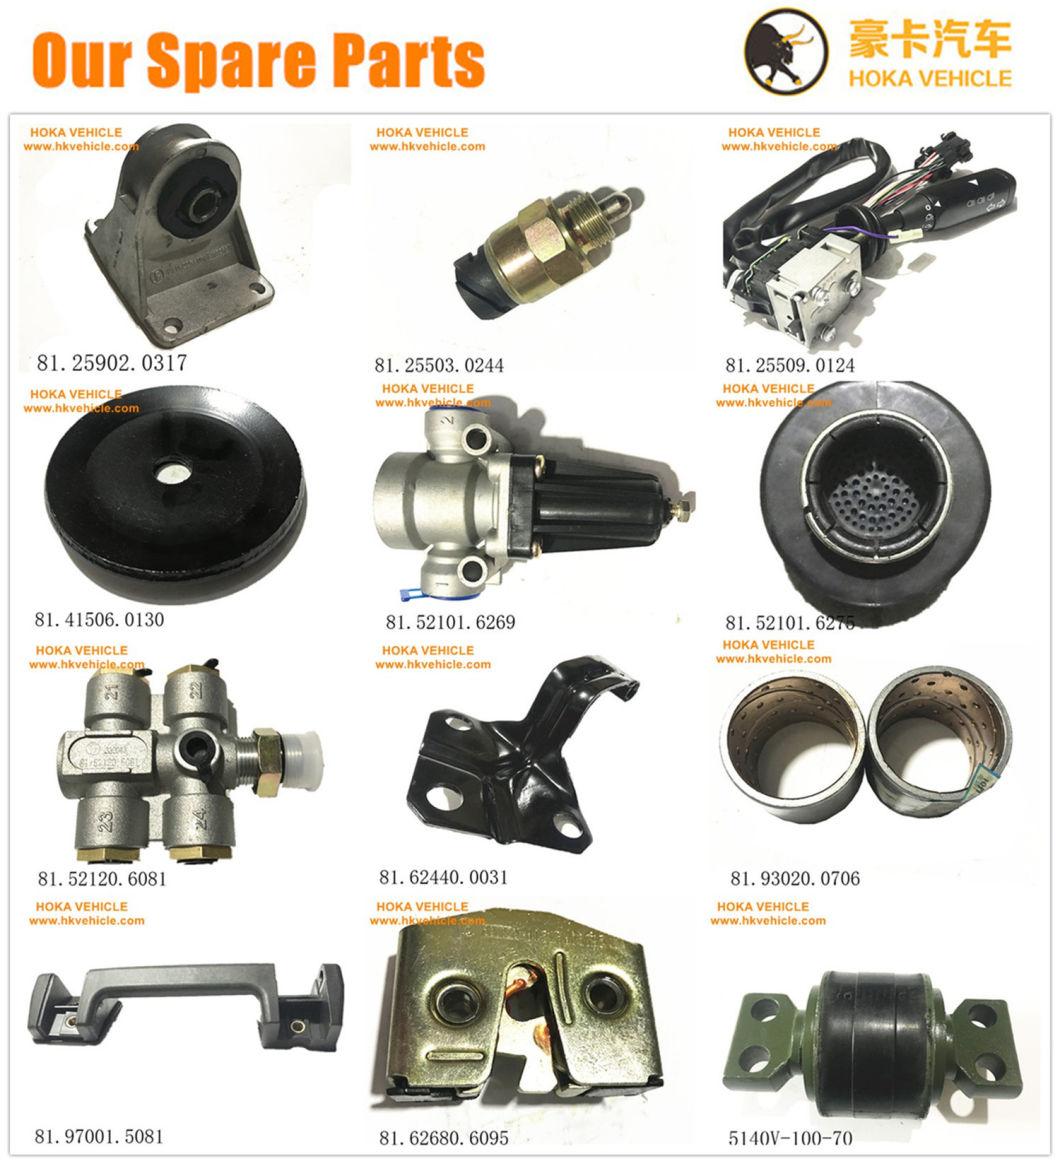 Original Wheel Loader Spare Parts Brake Adjustable Arm 860124851 for Wheel Loader/Grader Motor